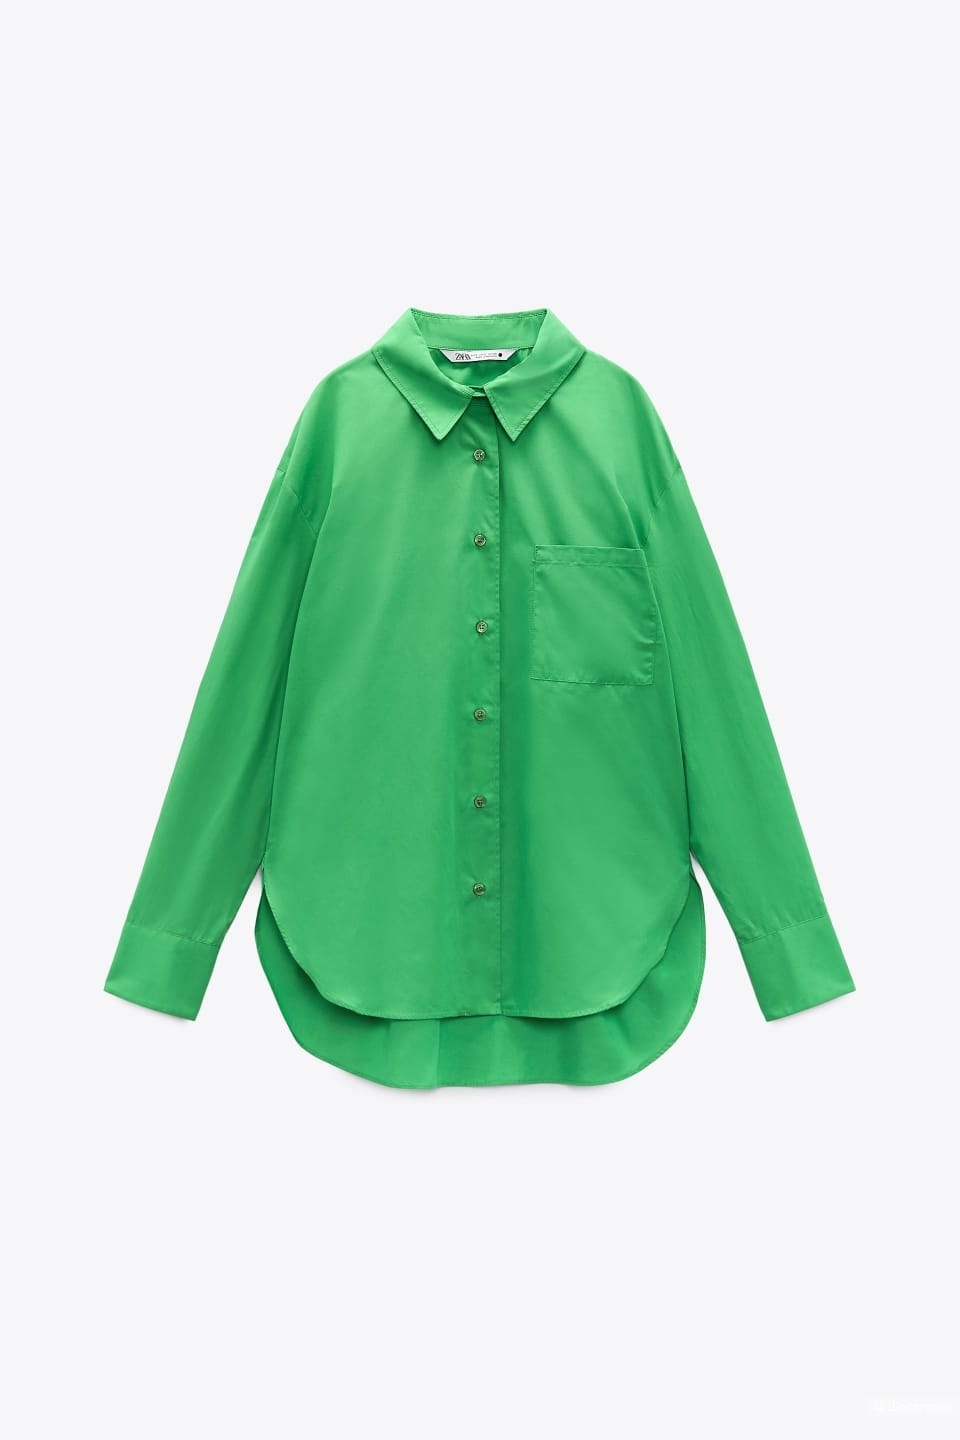 Рубашка Zara/XL